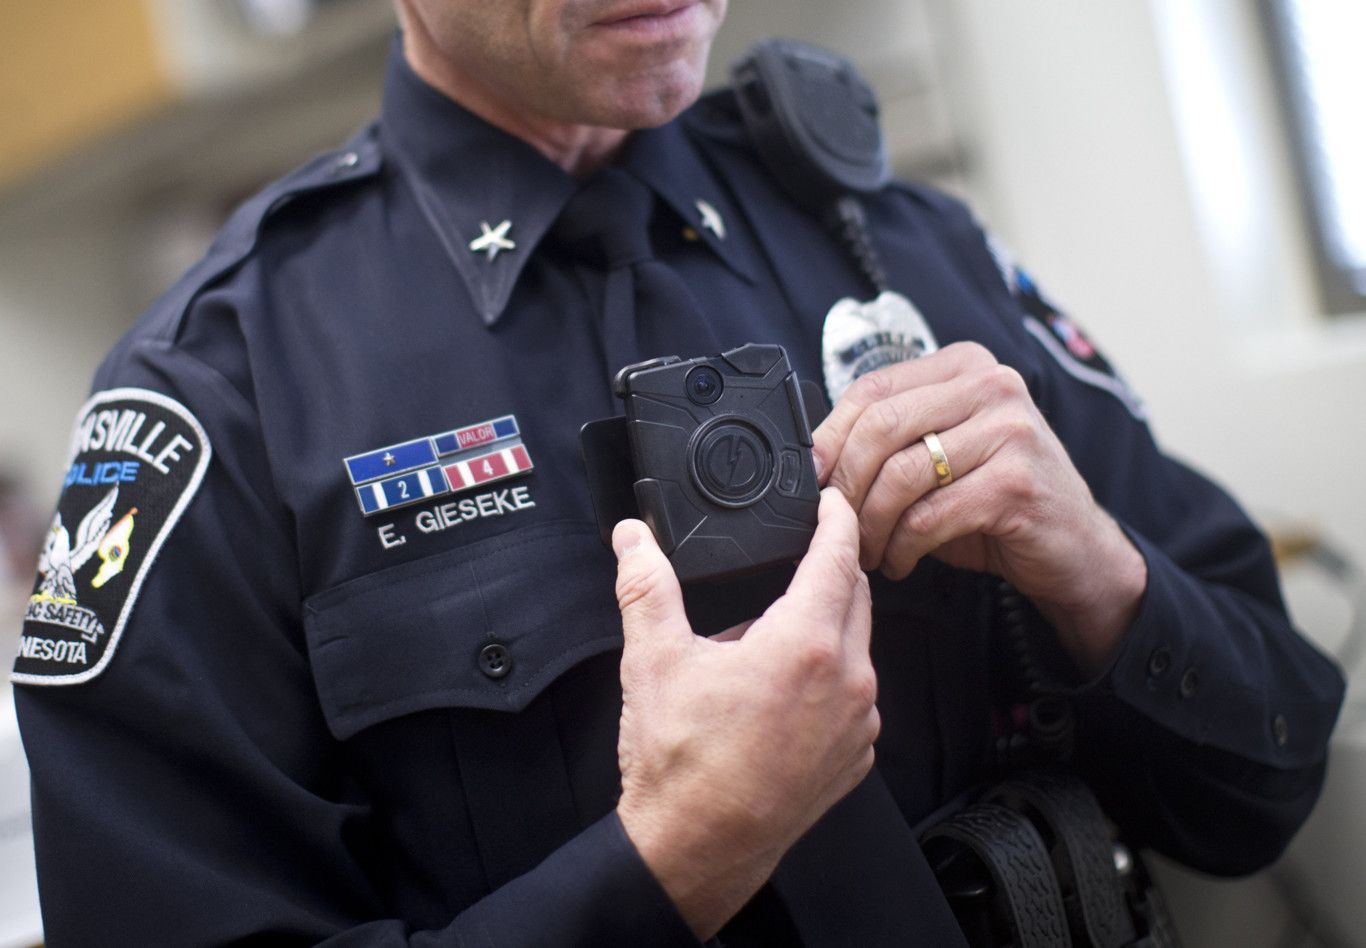 El Congreso debatirá los guardias civiles y policías llevar cámaras corporales para grabar delitos